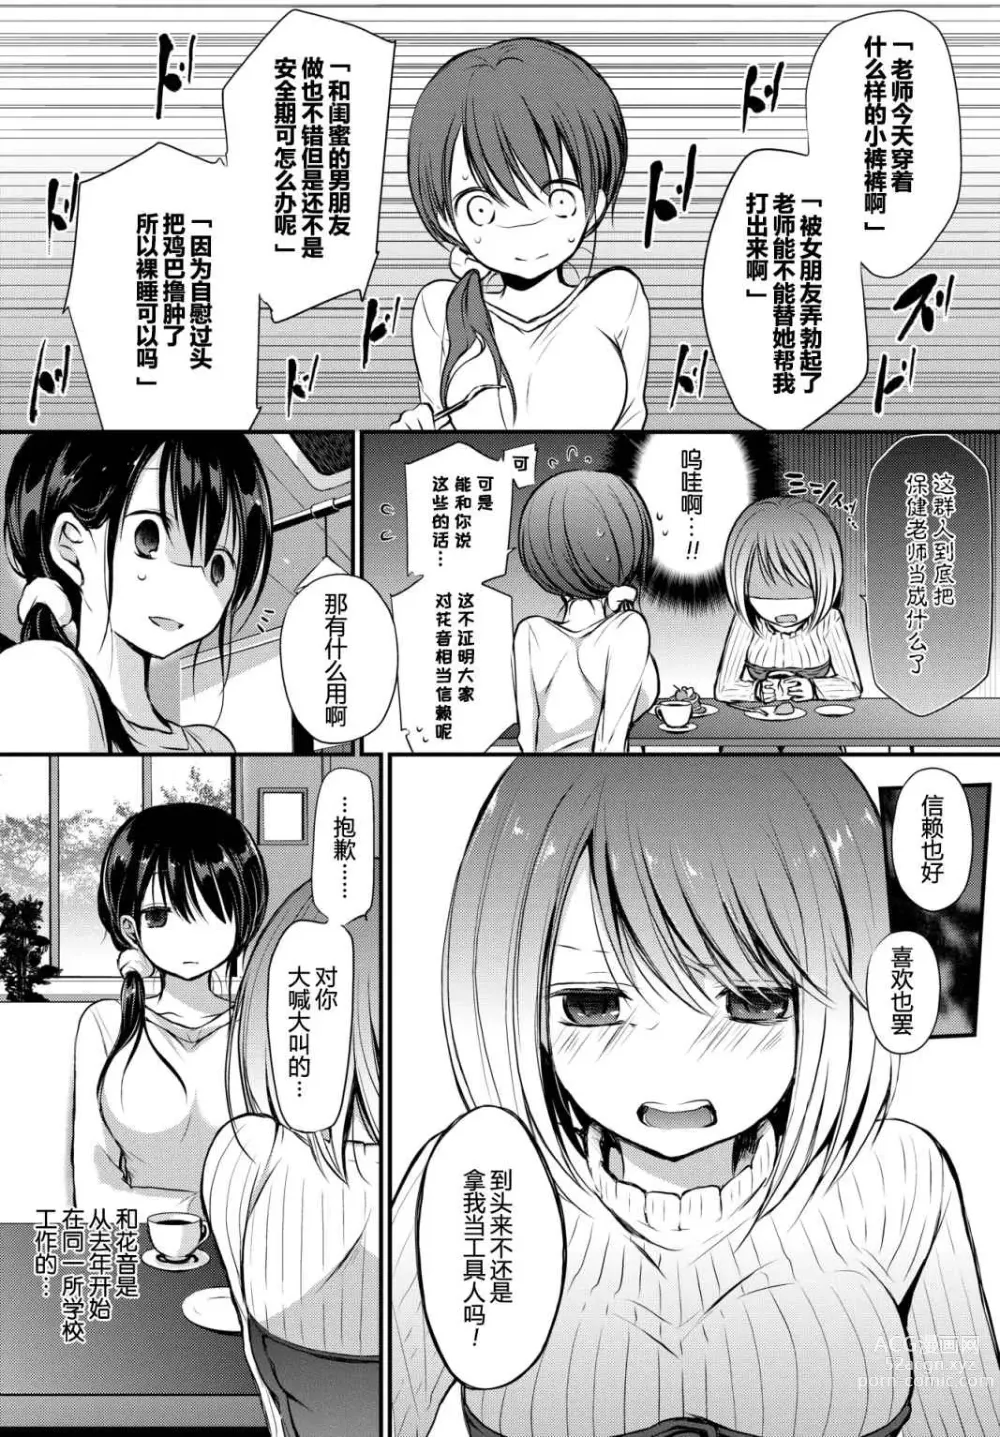 Page 6 of manga Suki No Uragawa (uncensored)